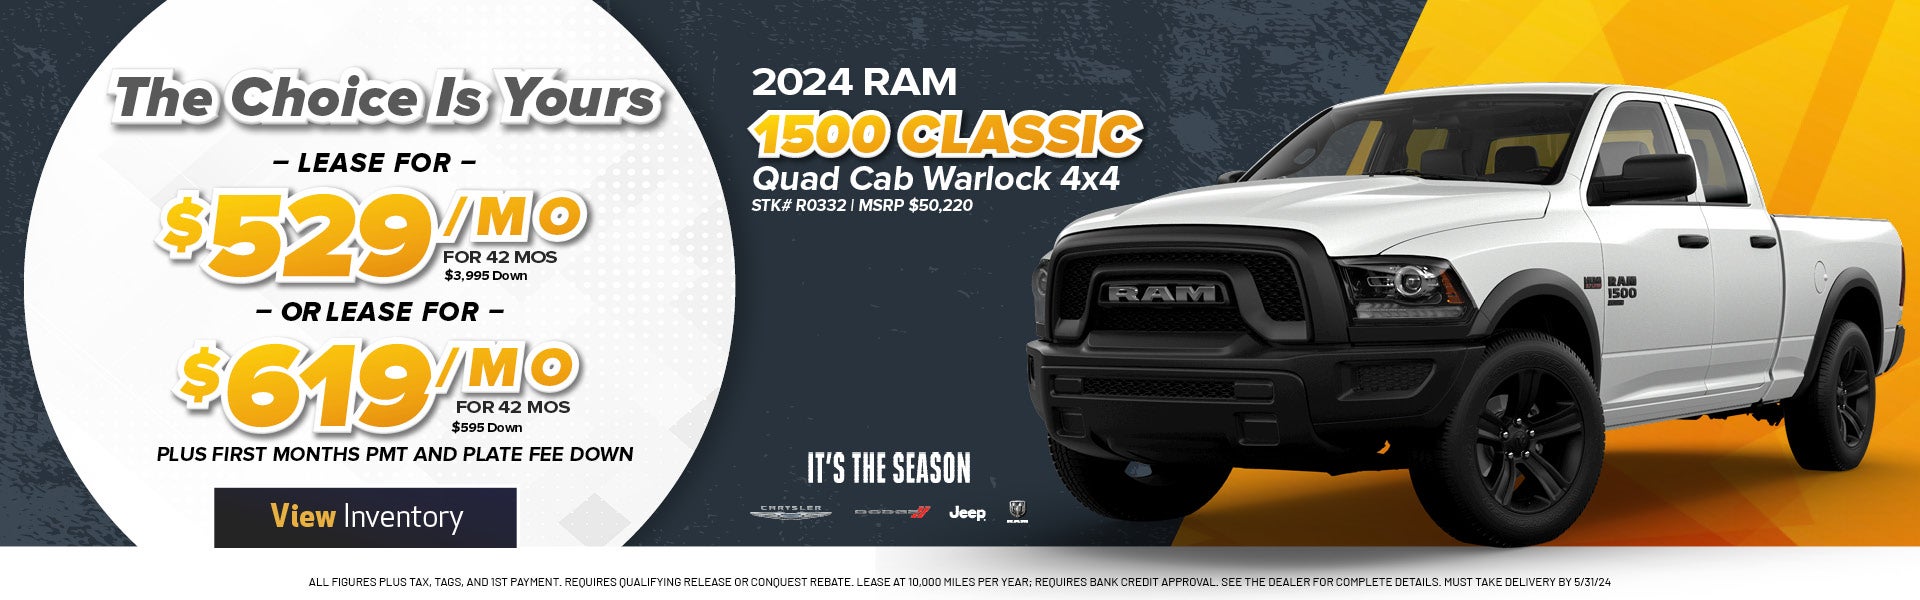 2024 ram 1500 classic warlock